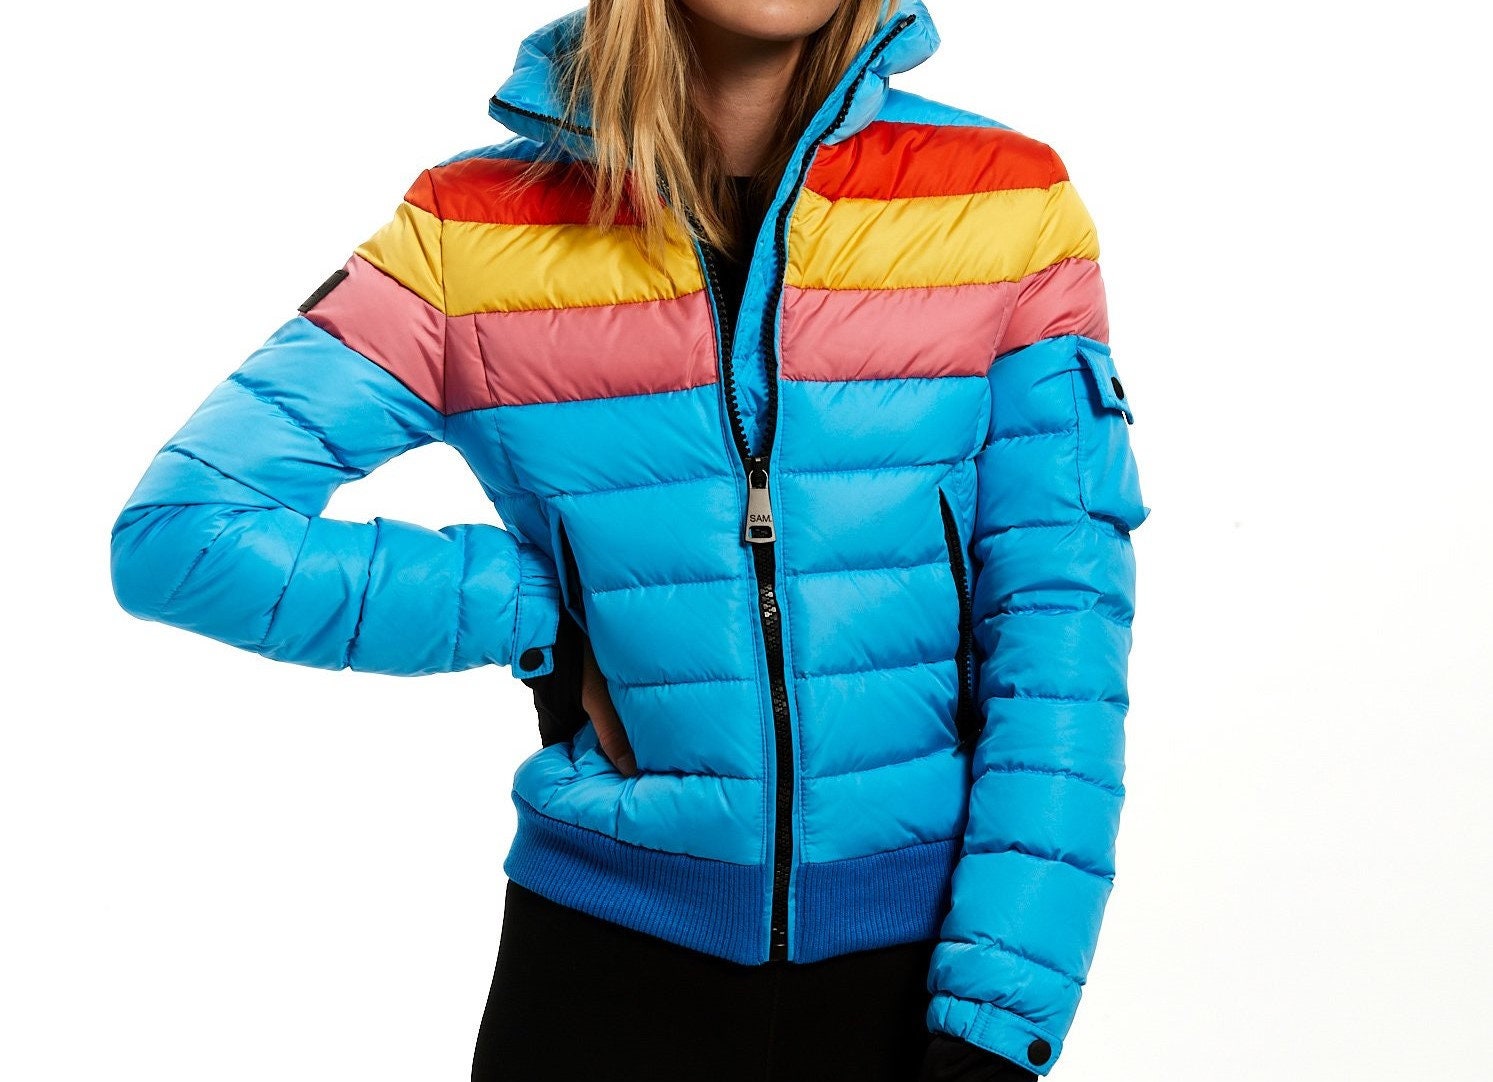 Gevestigde theorie omdraaien Weerkaatsing 70s Women Jacket Women's Rainbow Jacket 70s Vintage Ski - Etsy